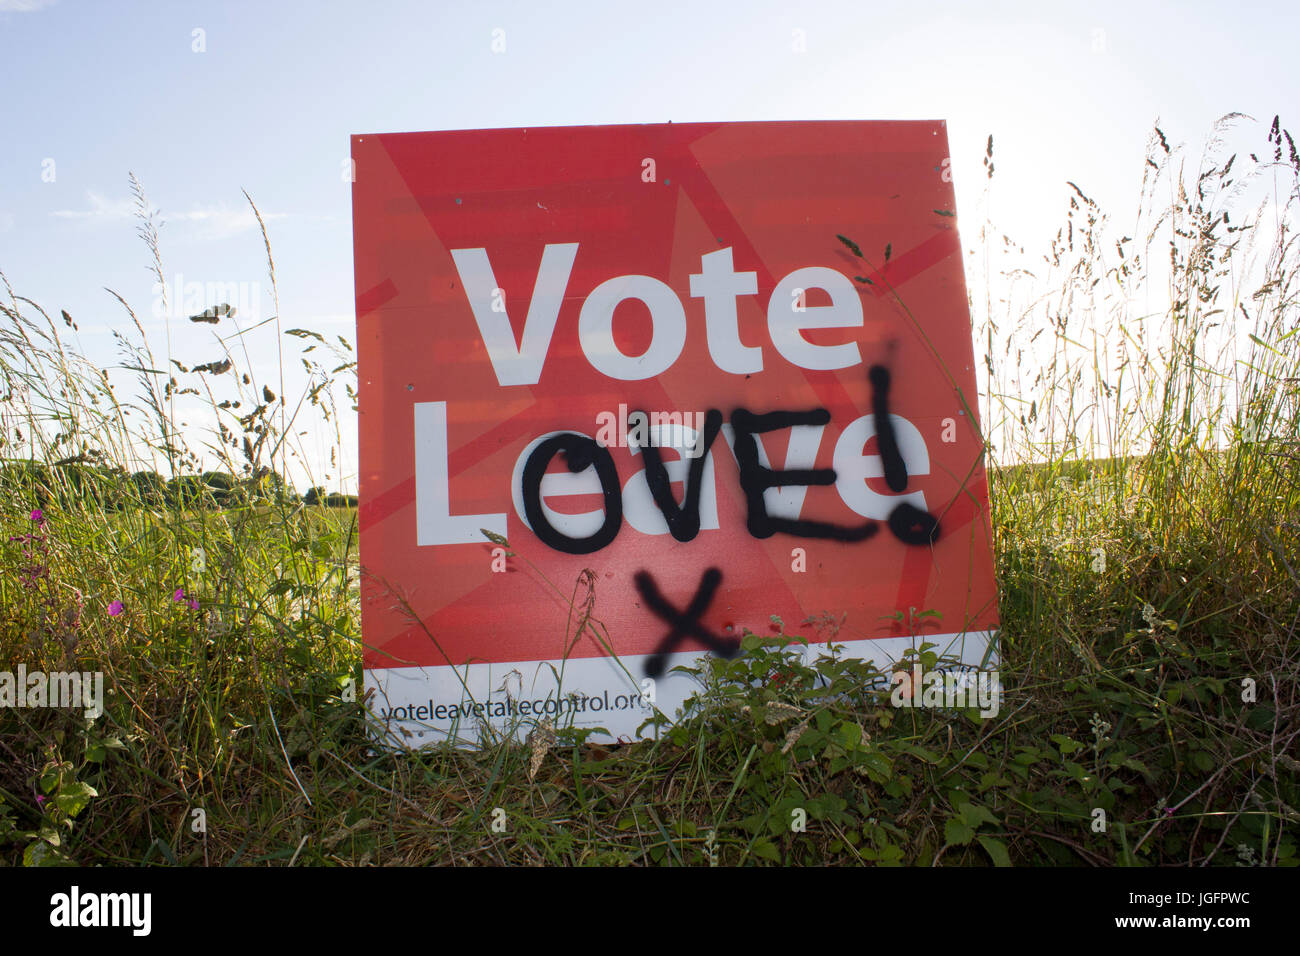 Austritt - eine Abstimmung verlassen Europa Zeichen, die verwüstet wurden mit Graffiti zu Abstimmung Liebe sagen. Unterstreicht den Unterschied Meinung nach während des Referendums. Stockfoto